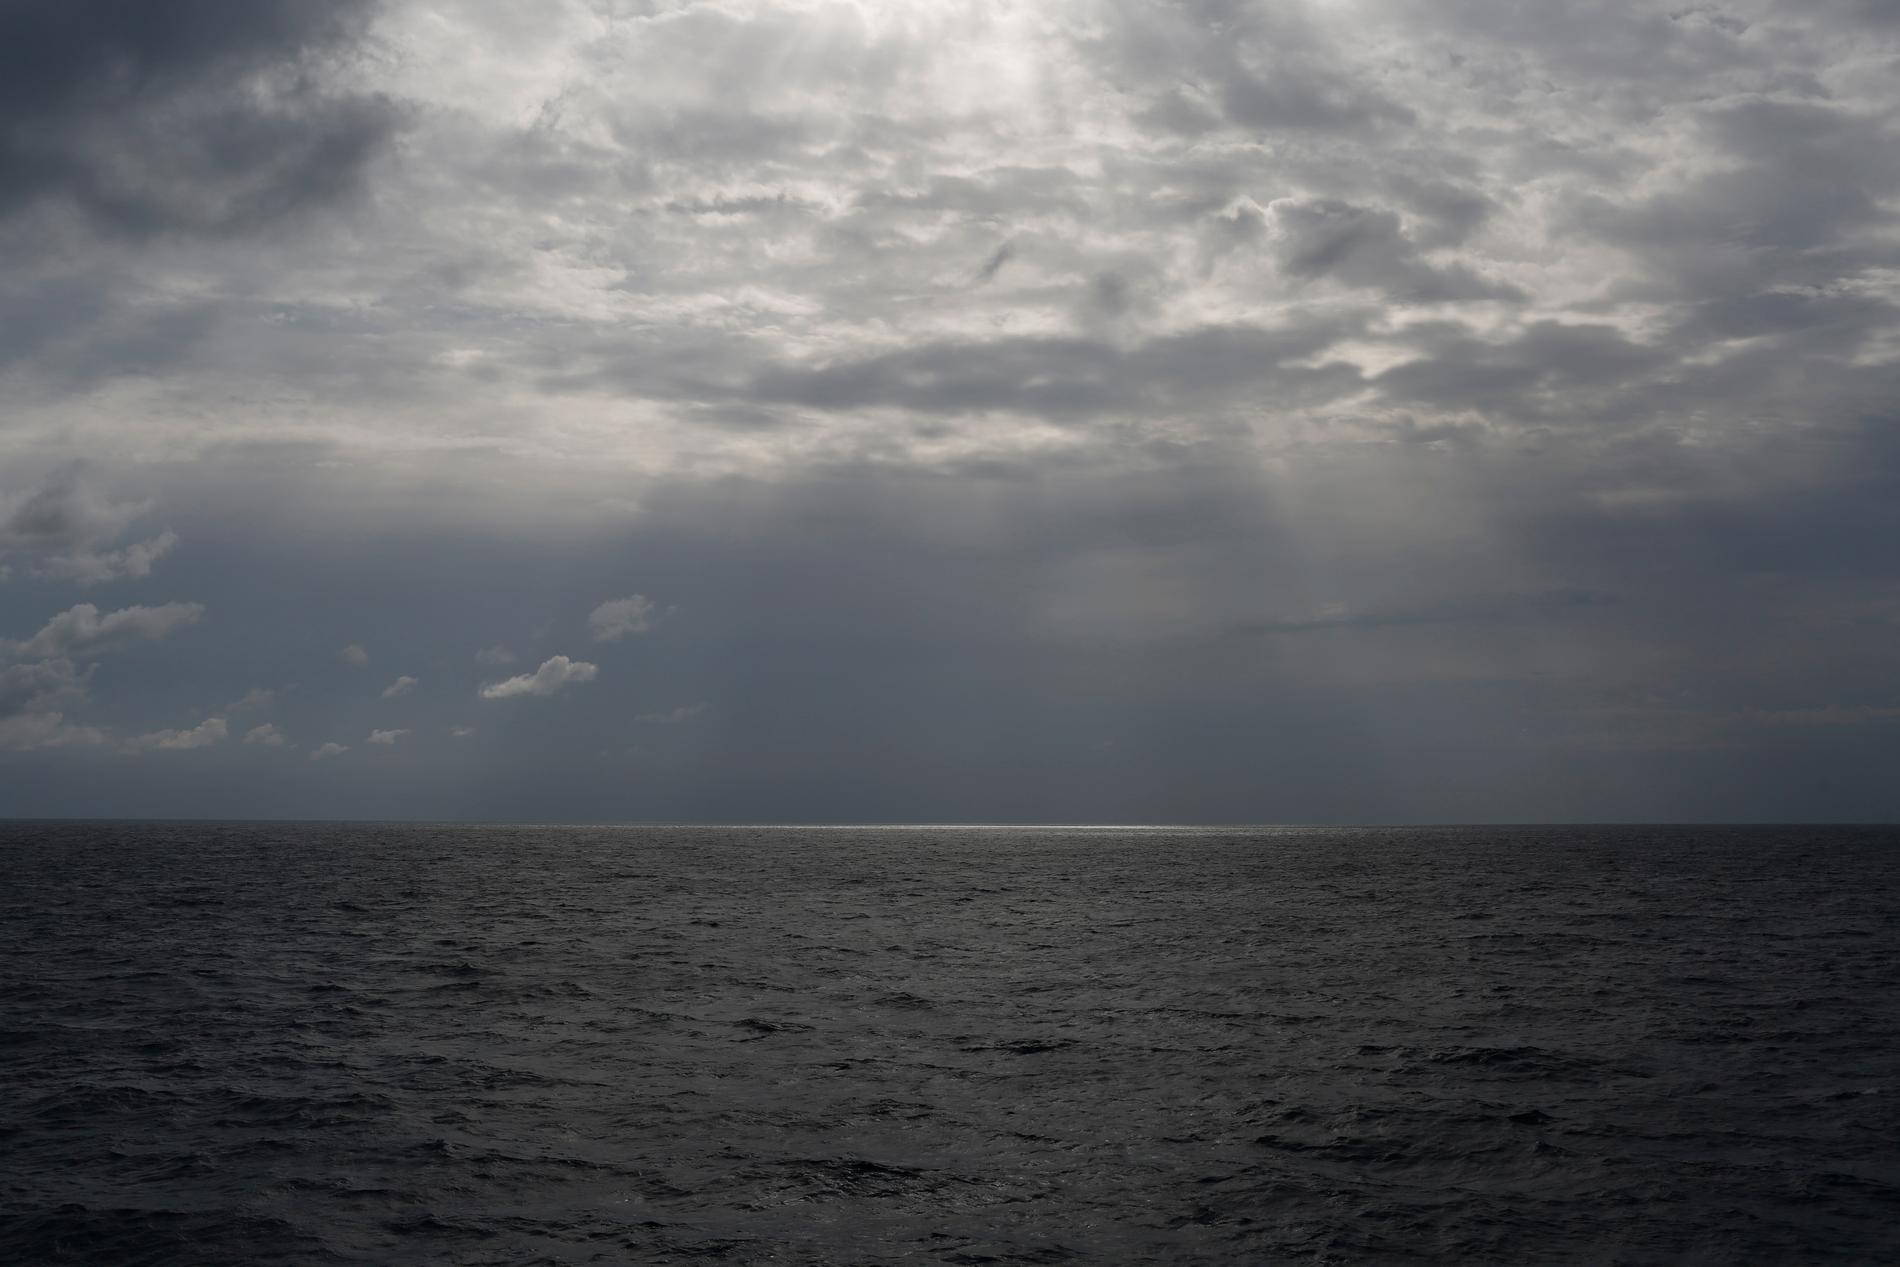 En båt med 50 personer ombord har kapsejsat utanför Libyens kust. Arkivbild från Medelhavet utanför Libyen.